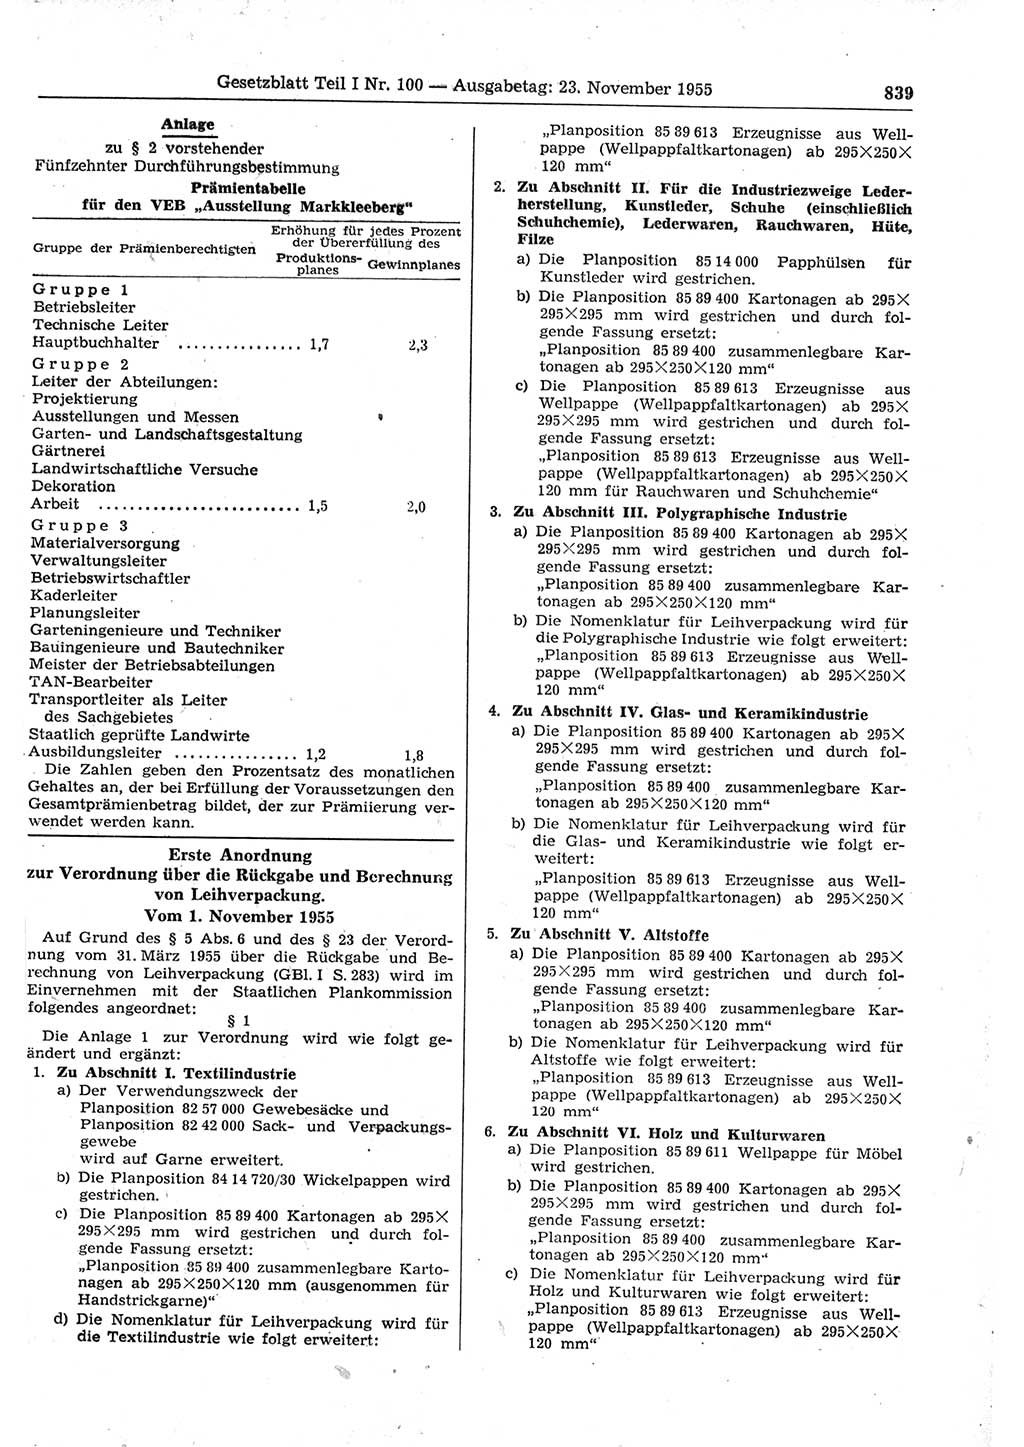 Gesetzblatt (GBl.) der Deutschen Demokratischen Republik (DDR) Teil Ⅰ 1955, Seite 839 (GBl. DDR Ⅰ 1955, S. 839)